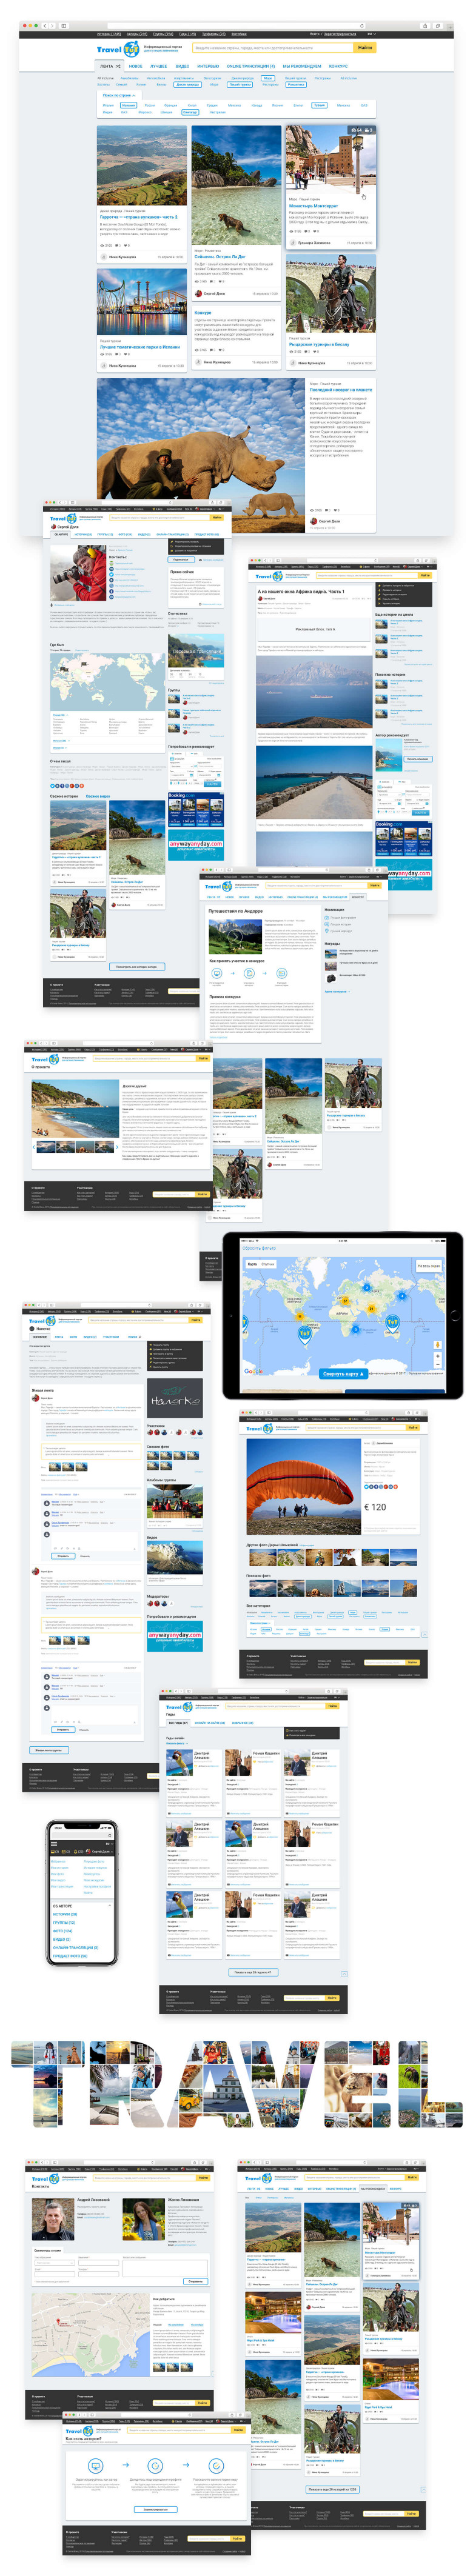 Блог-платформа и соцсеть для путешественников TravelTuT (Испания))